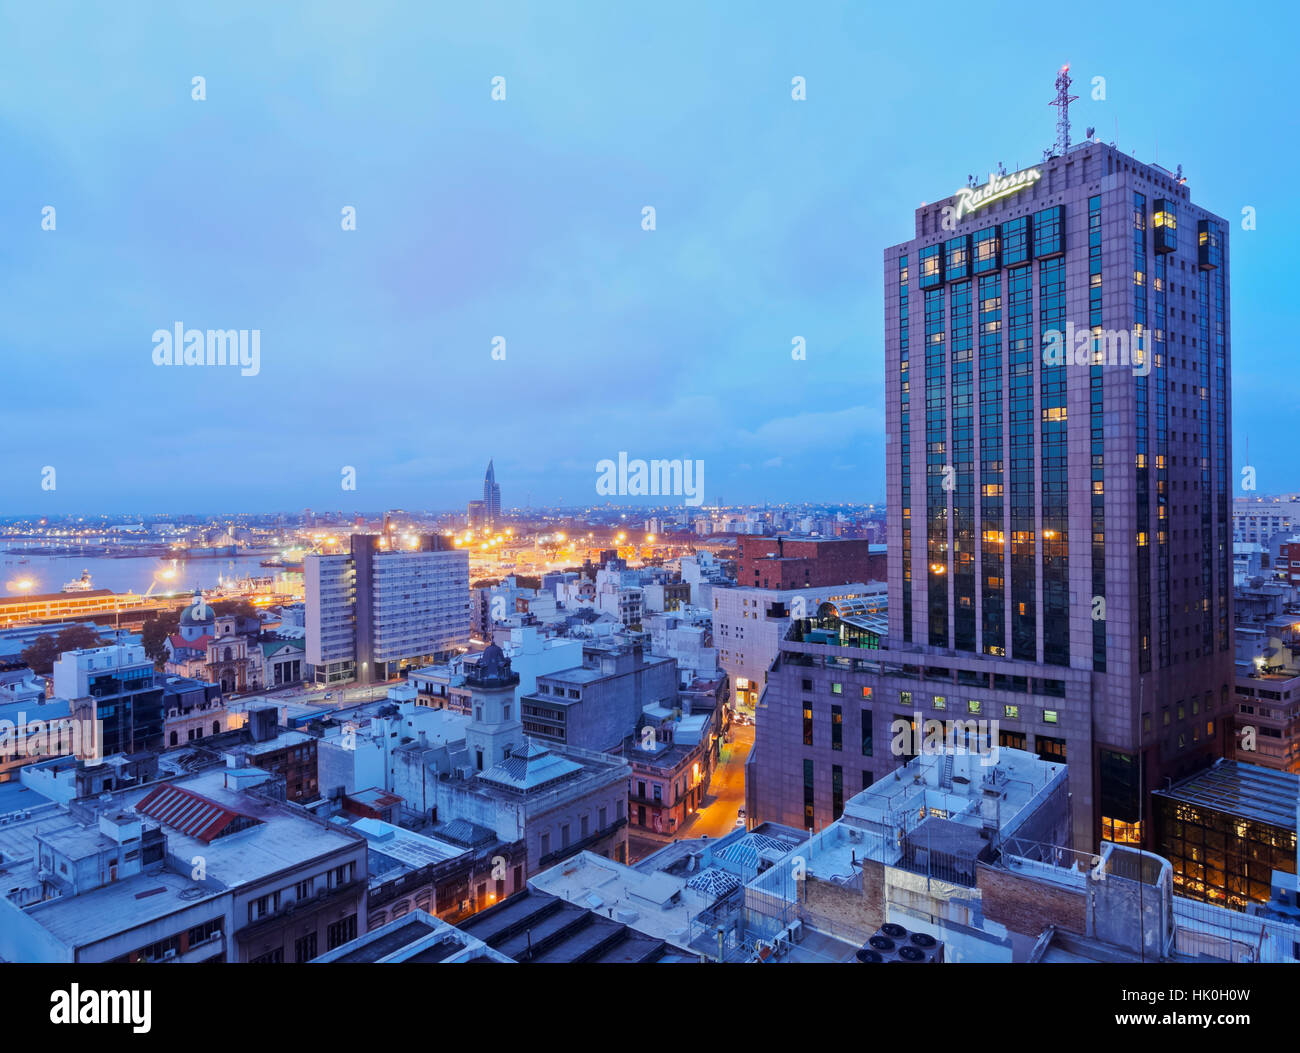 Erhöhten Blick auf die Innenstadt mit dem charakteristischen Gebäude des Radisson Hotels, Montevideo, Uruguay, Südamerika Stockfoto